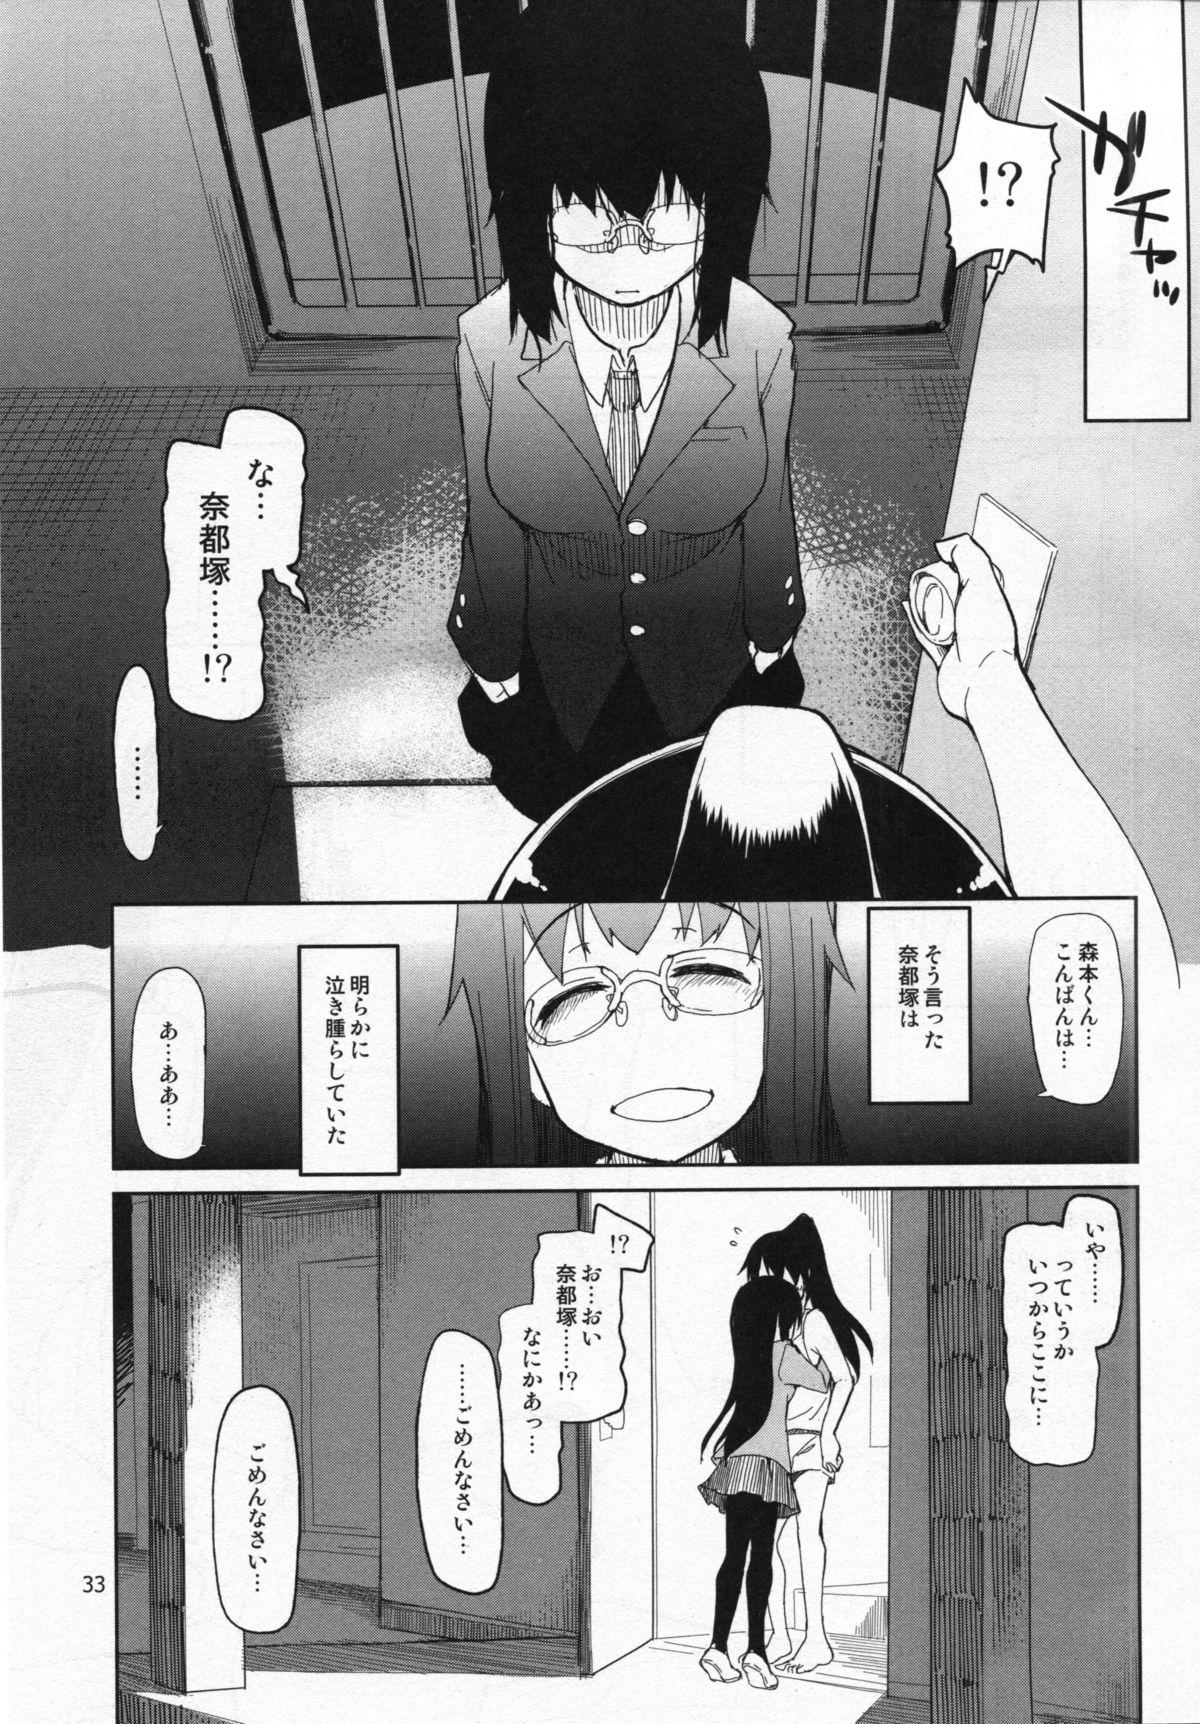 Natsuzuka-san no Himitsu. Vol. 5 Doukoku Hen 33